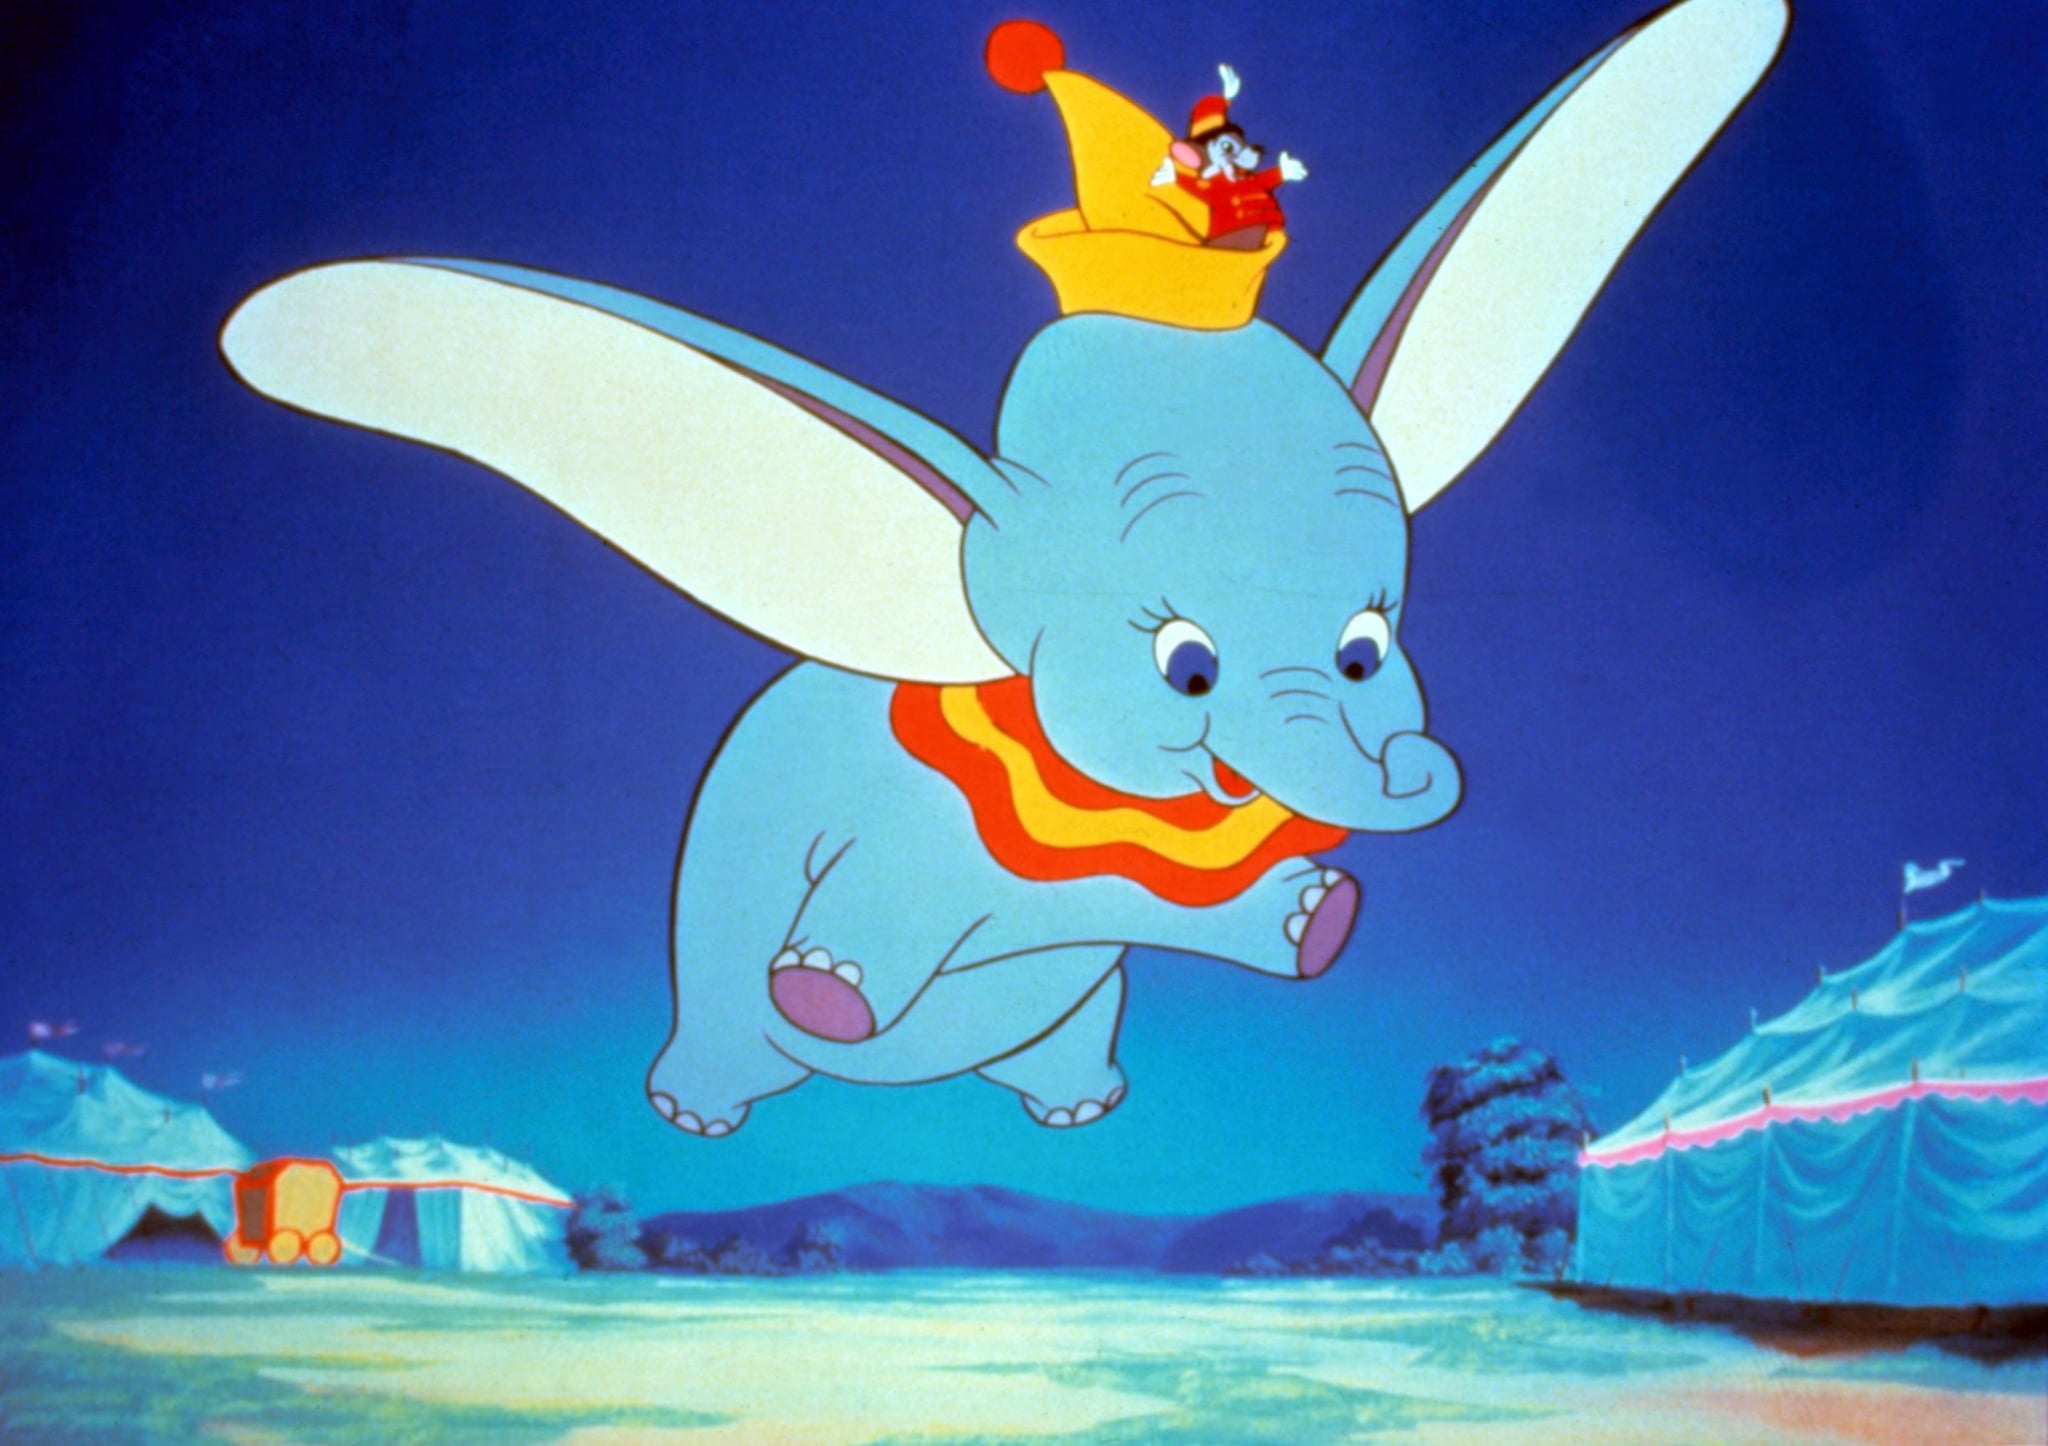 Dumbo Live-Action Movie Details | POPSUGAR Entertainment2048 x 1446